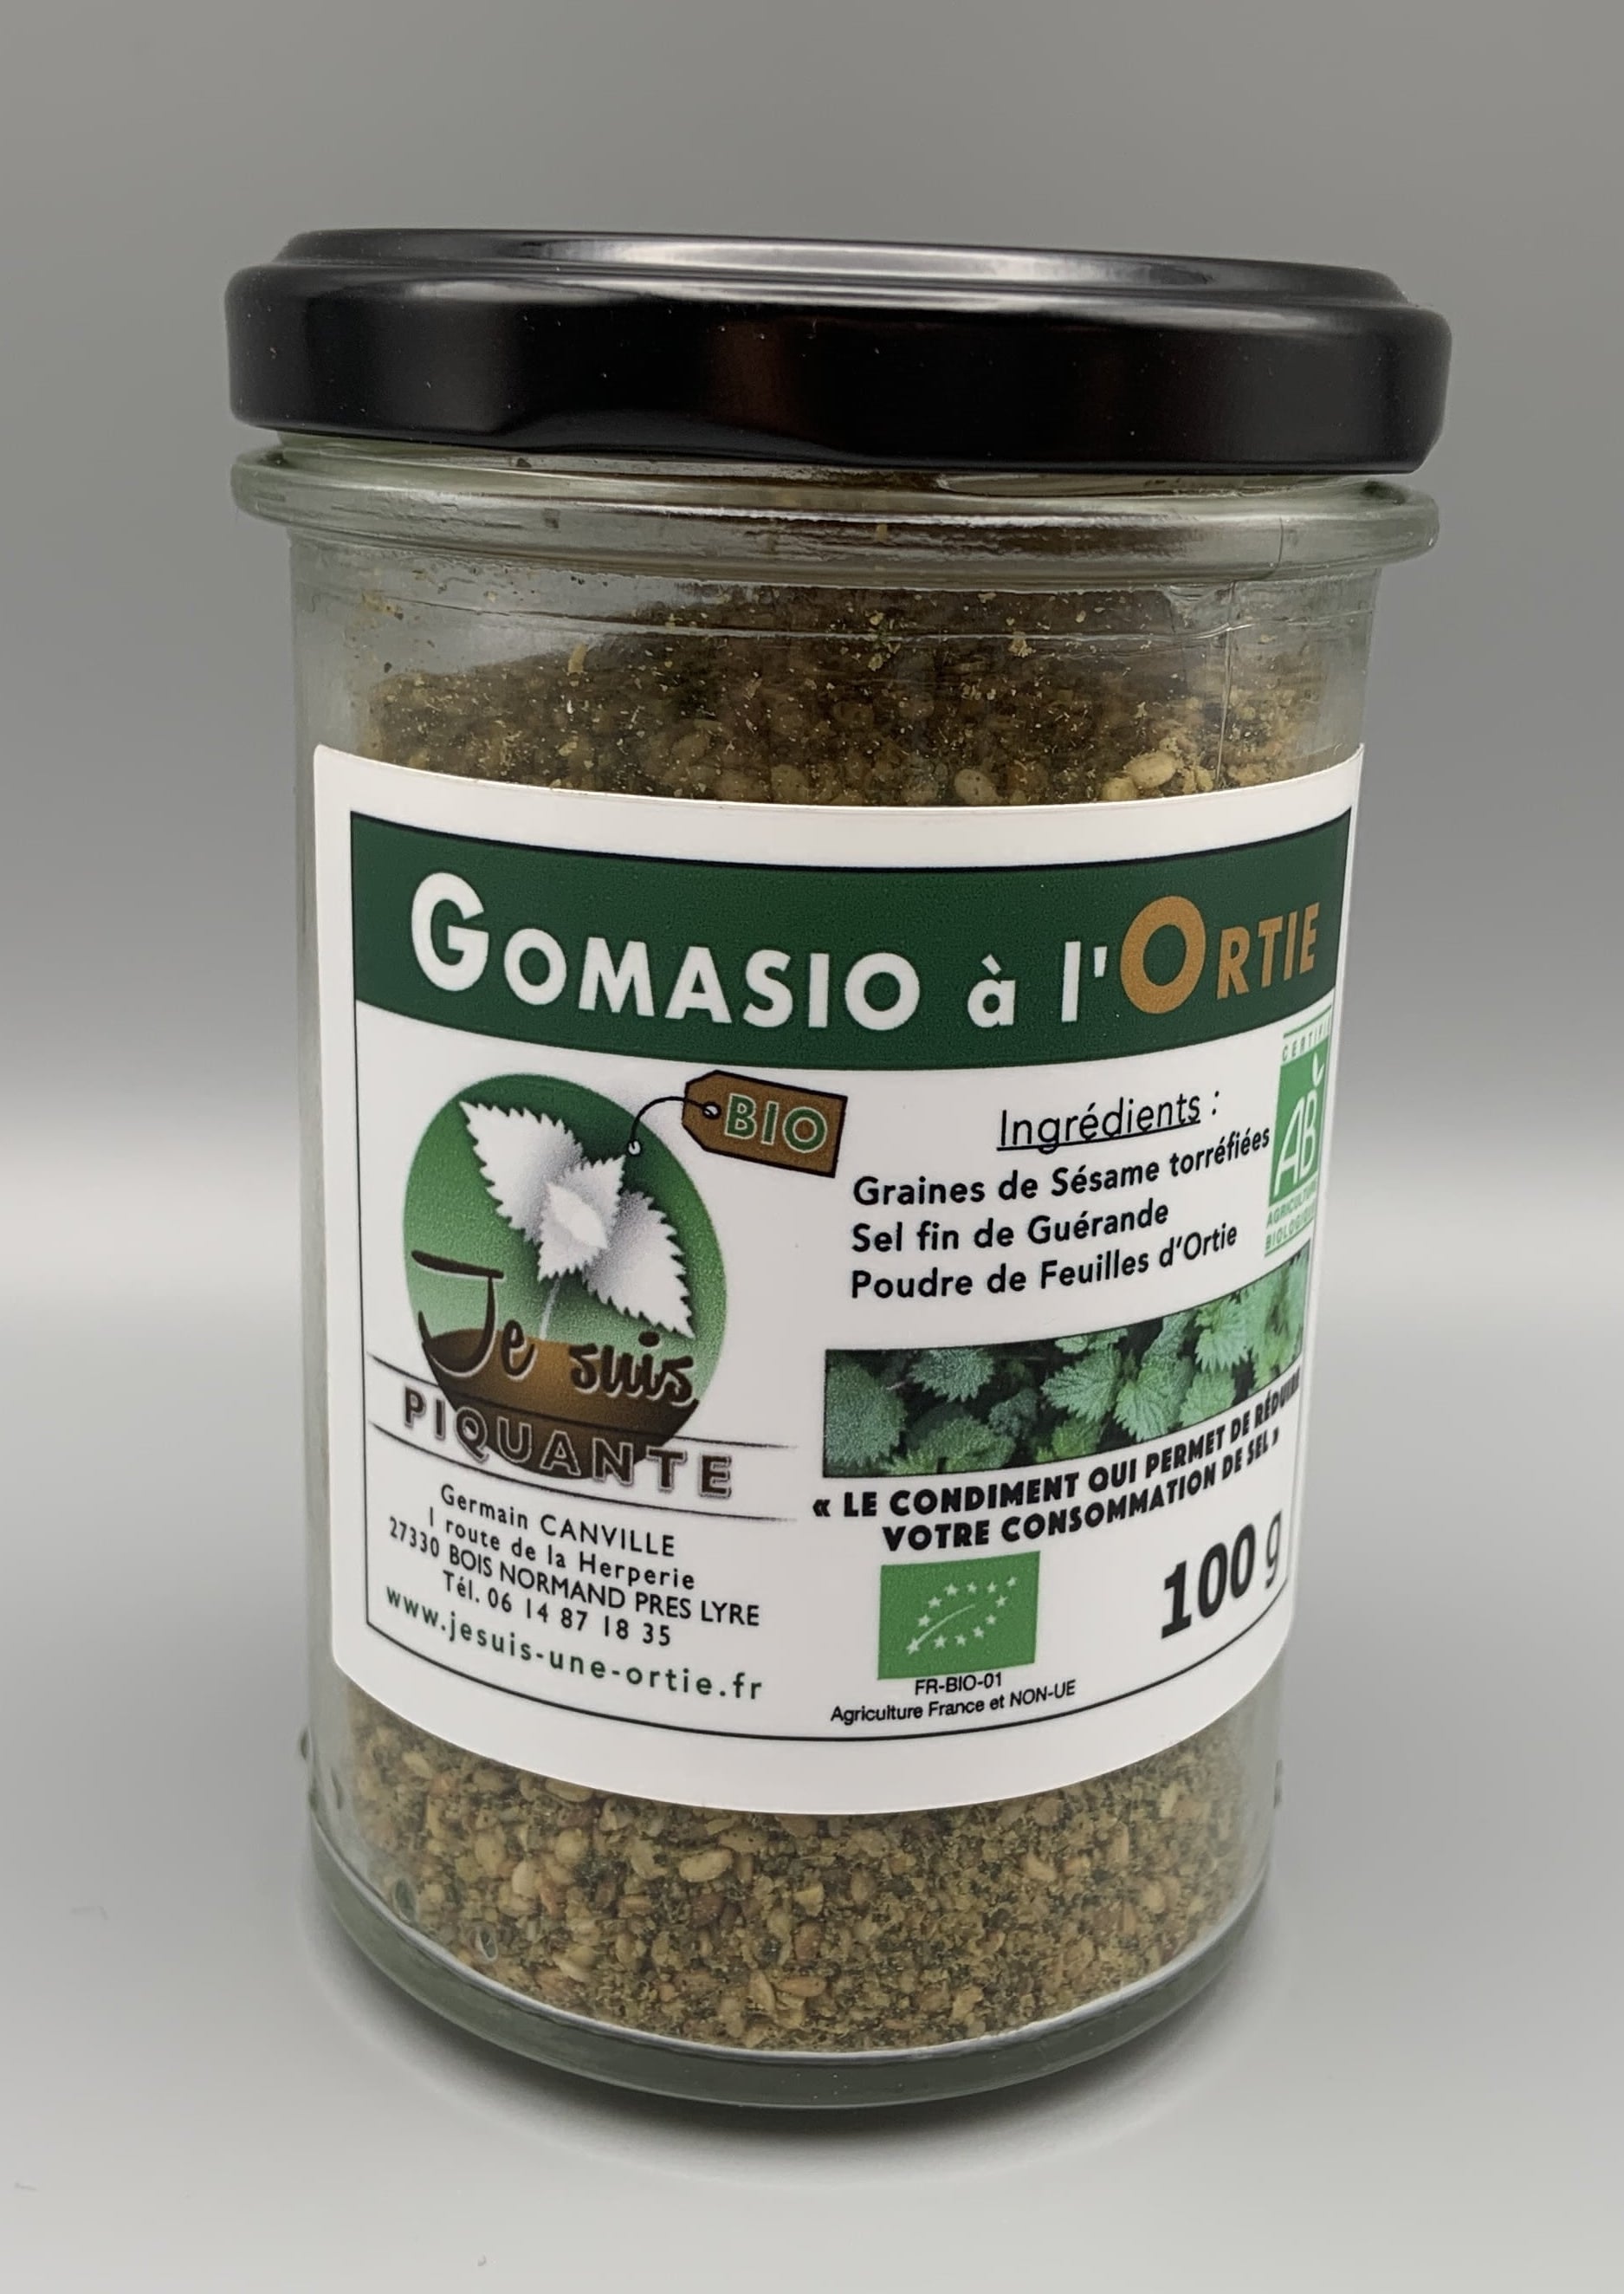 Gomasio Bio, Condiments